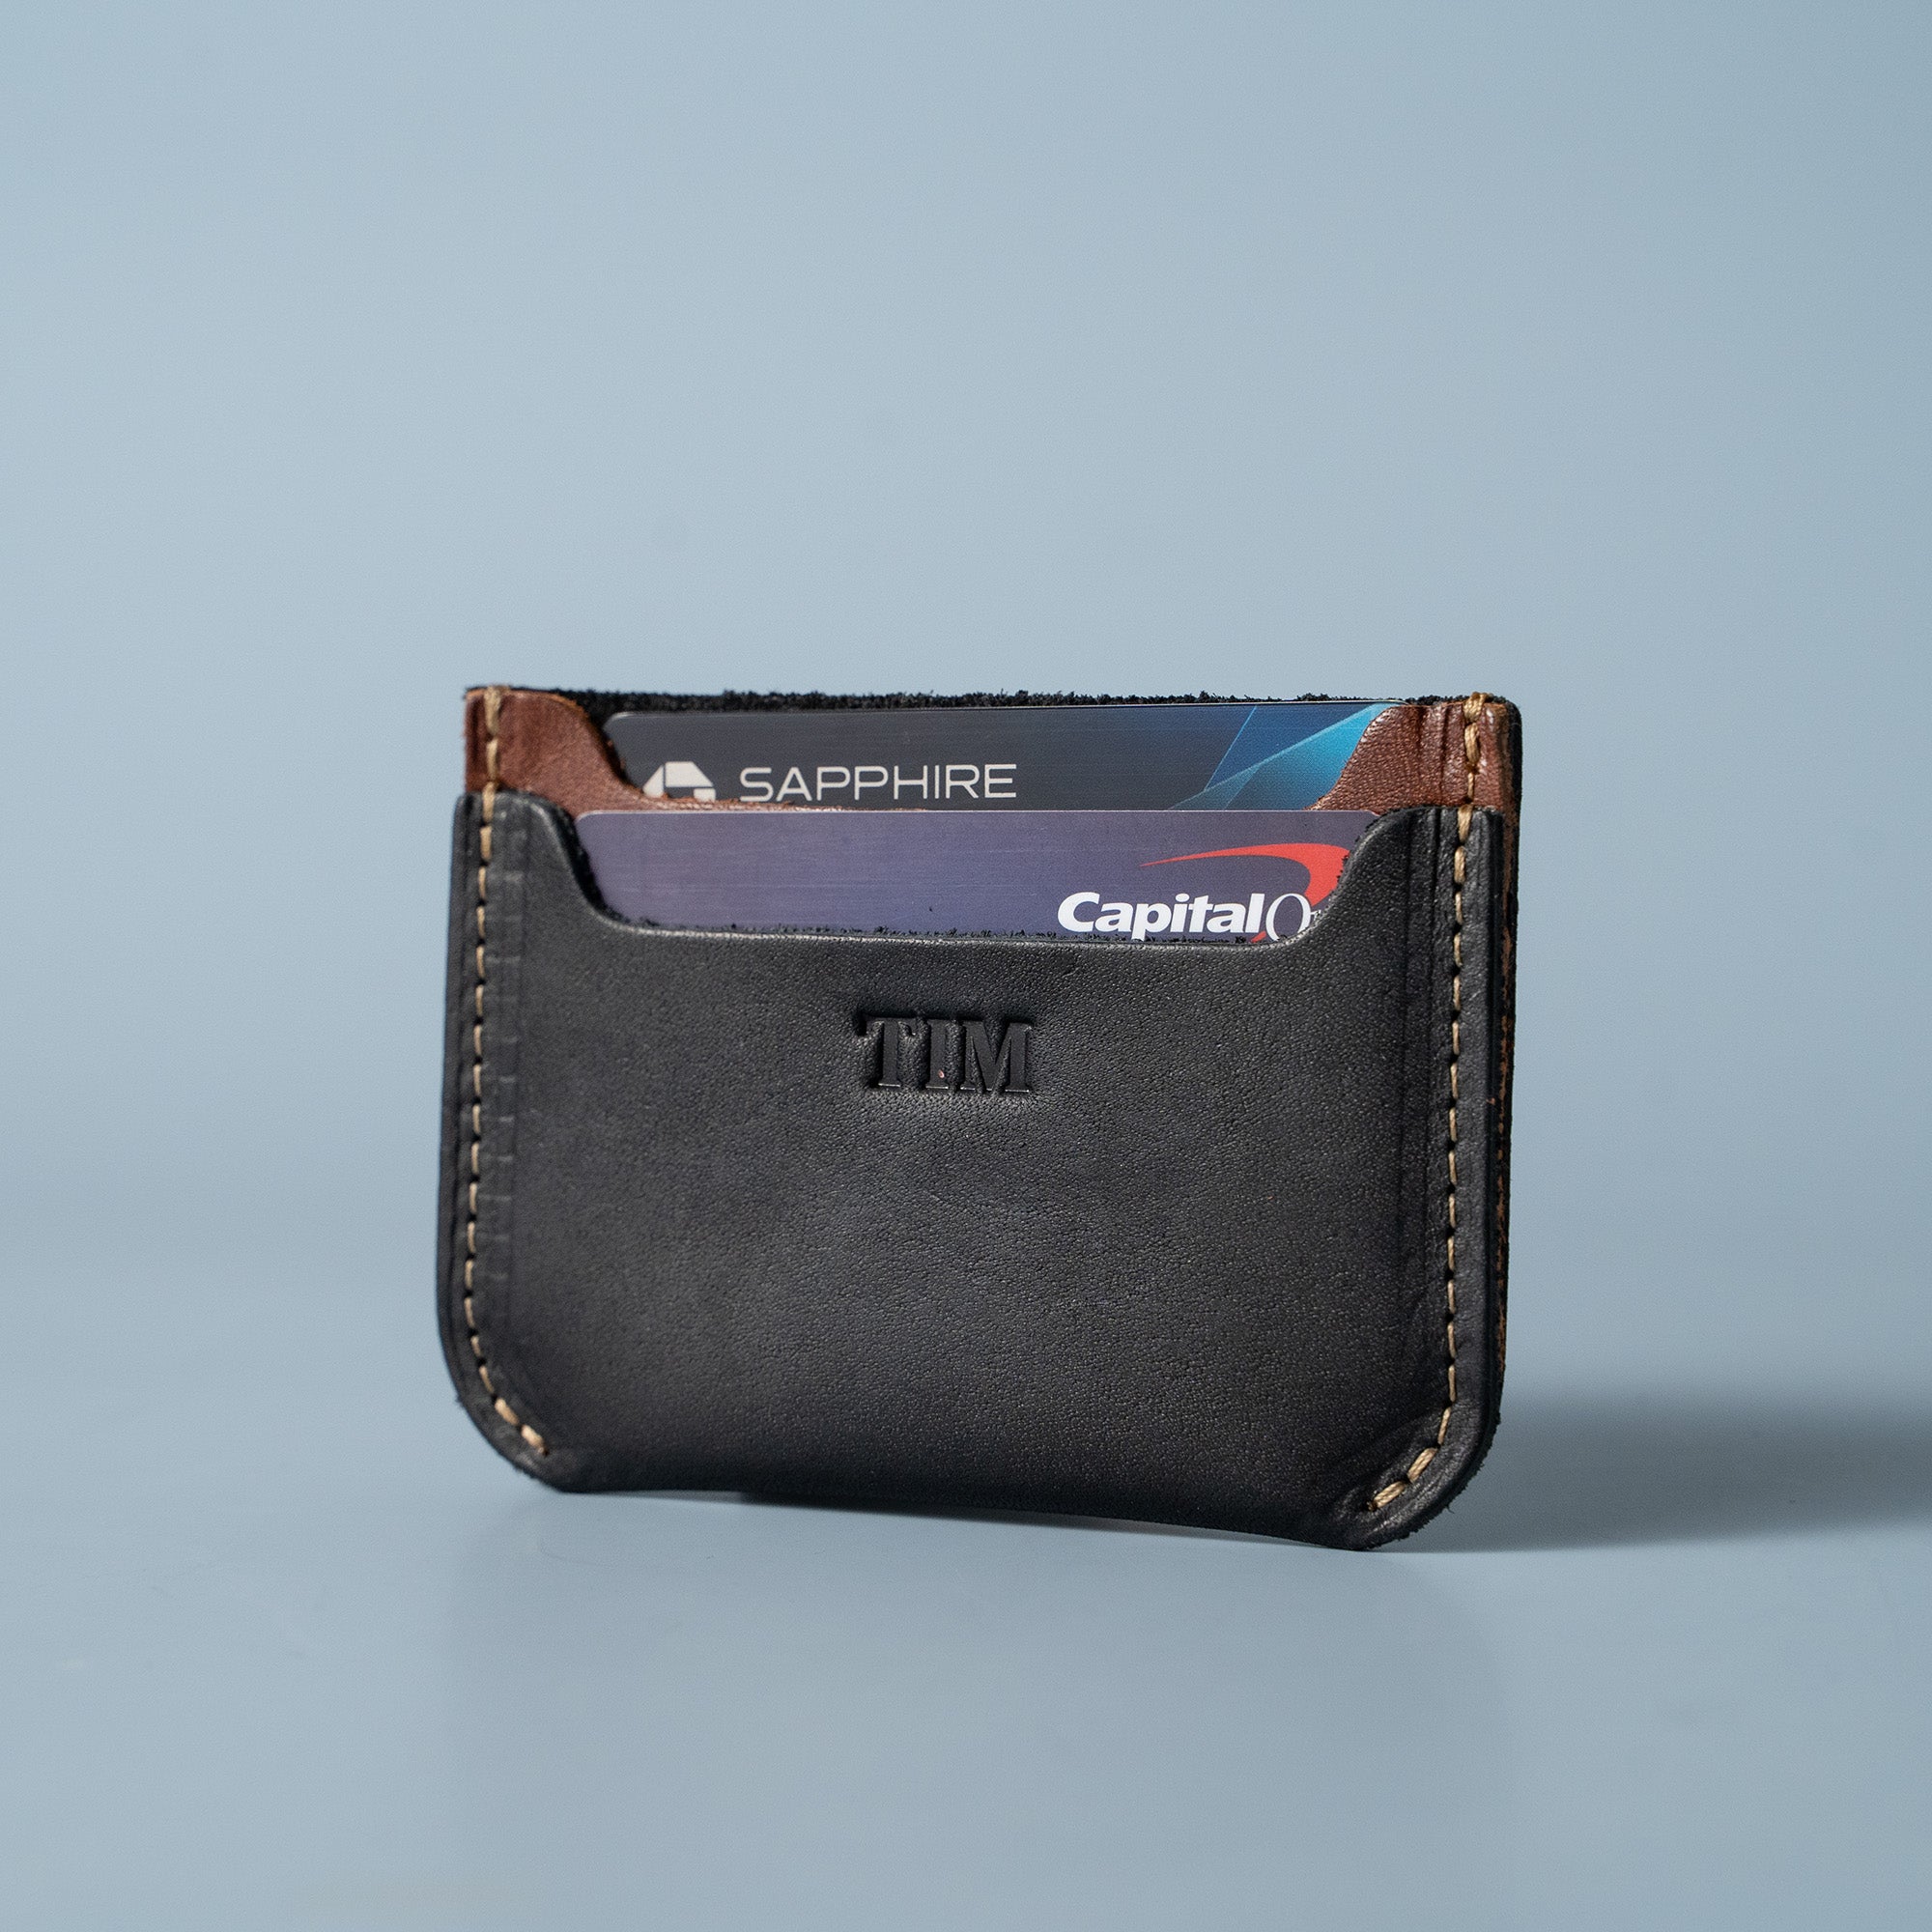 Kantha Credit Card Holder